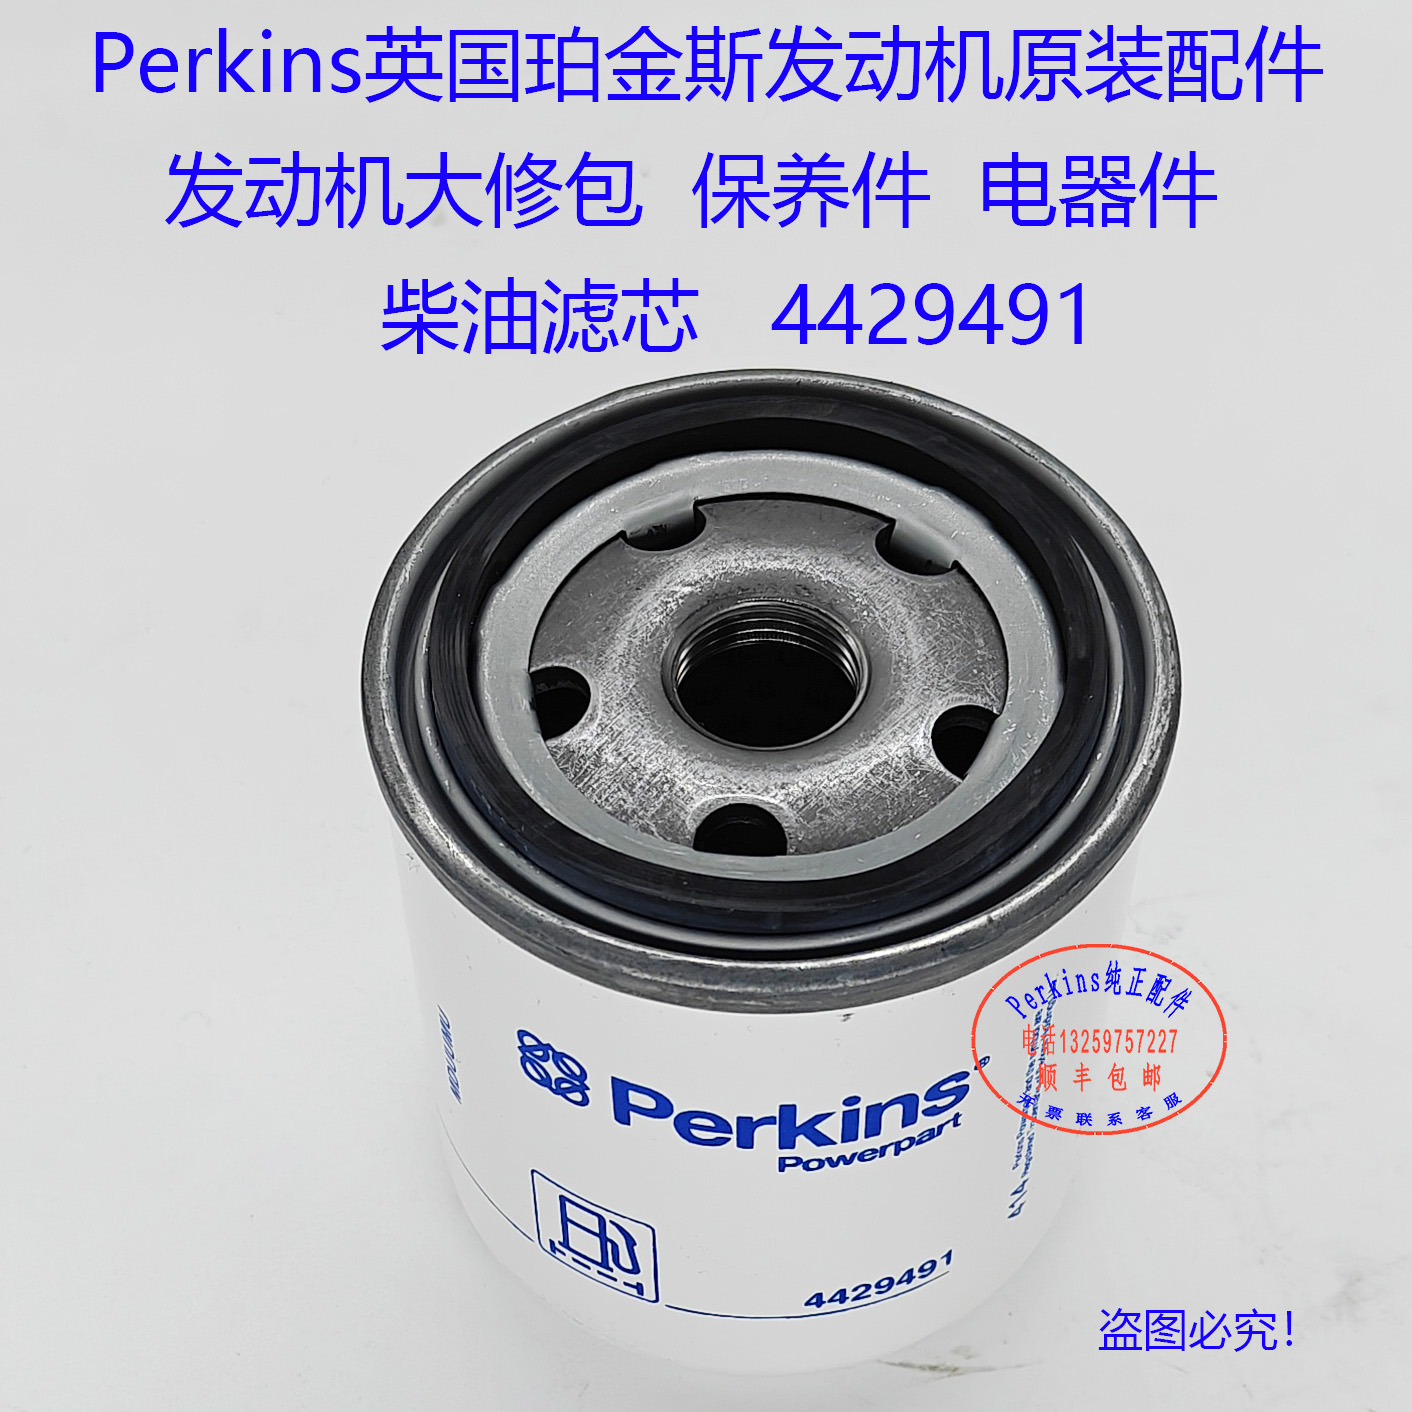 Perkins珀金斯发动机机油滤芯4429491三滤